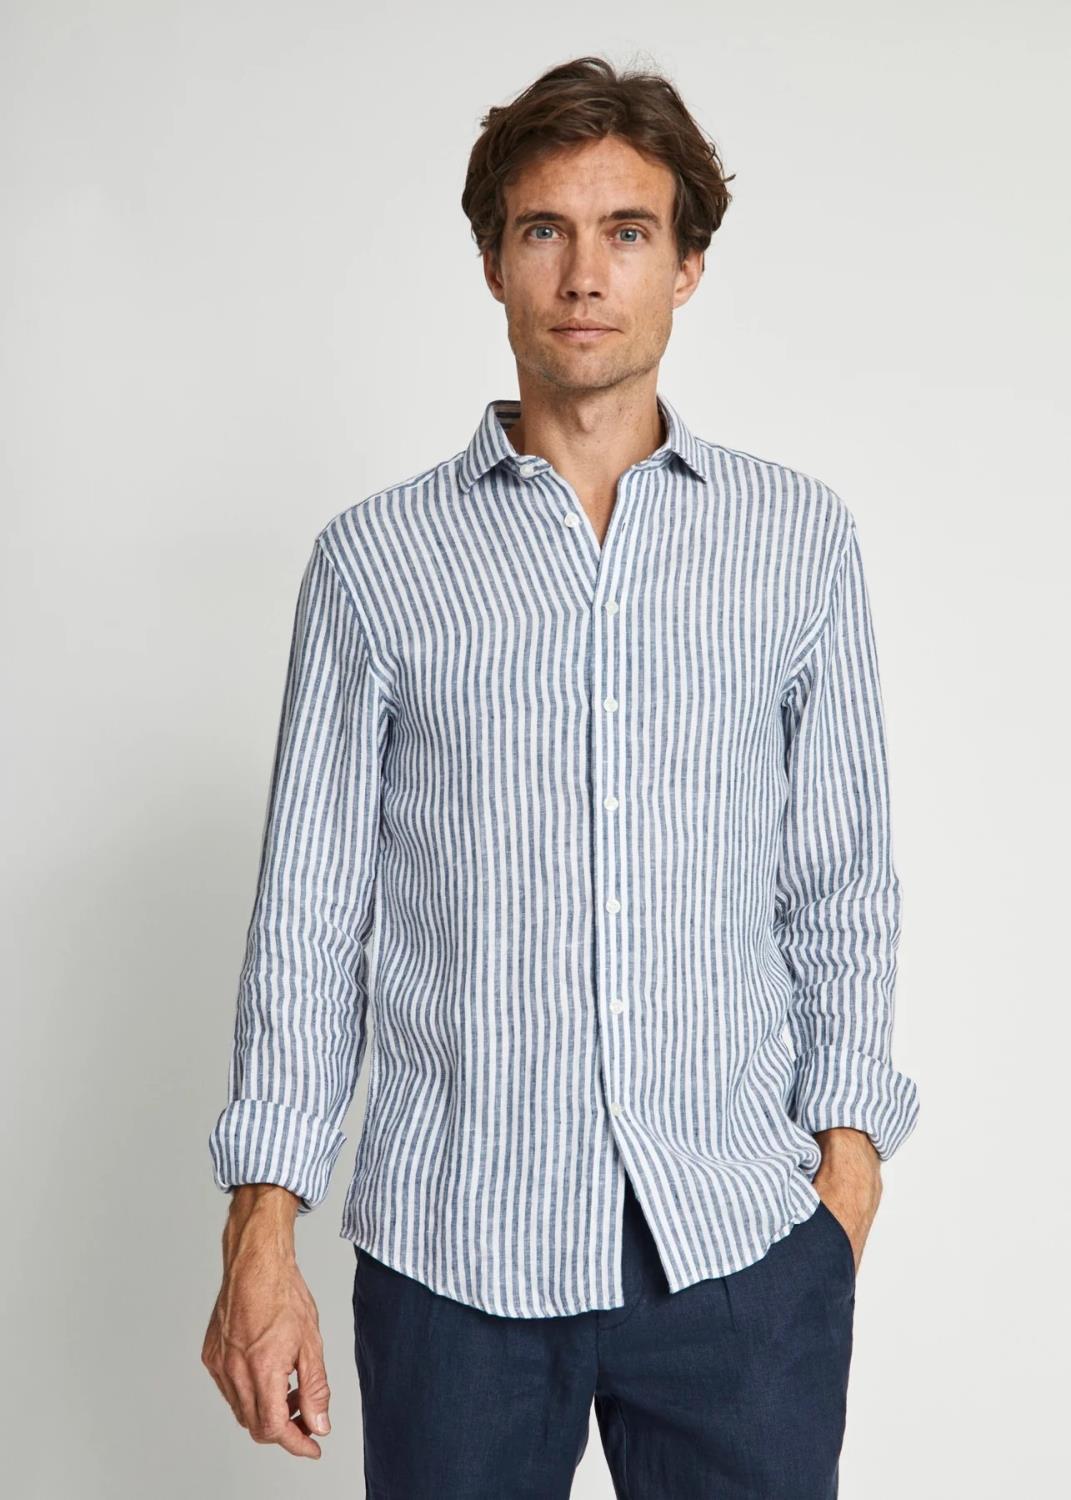 Bruun & Stengade Sydney Skjorte - Blue/White